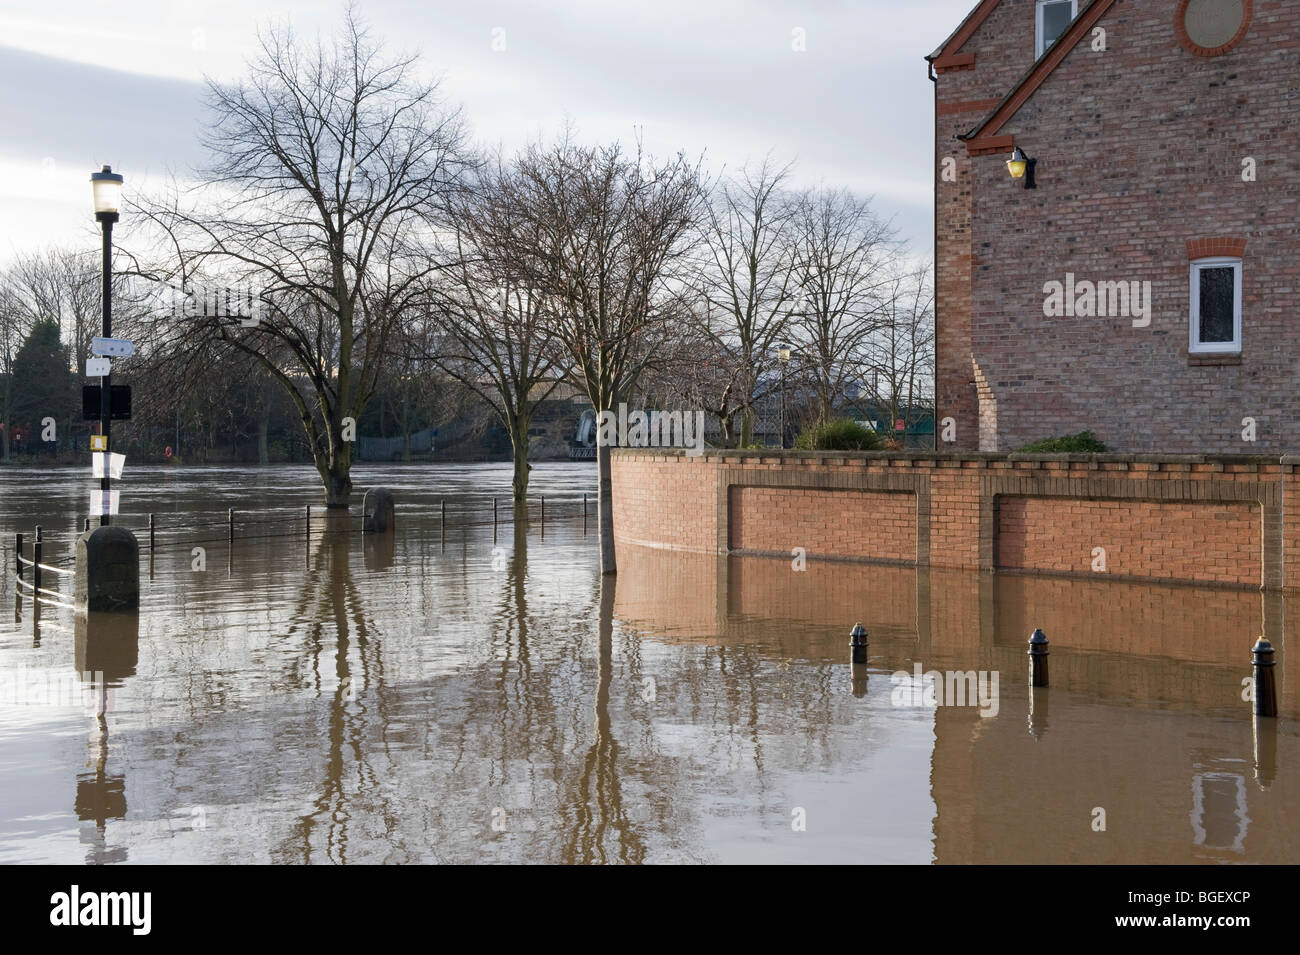 River Ouse platzte seine Ufer nach starkem Regen (Flussweg unter Hochwasser getaucht, hohe Hausmauer Barriere) - York, North Yorkshire, England Großbritannien. Stockfoto